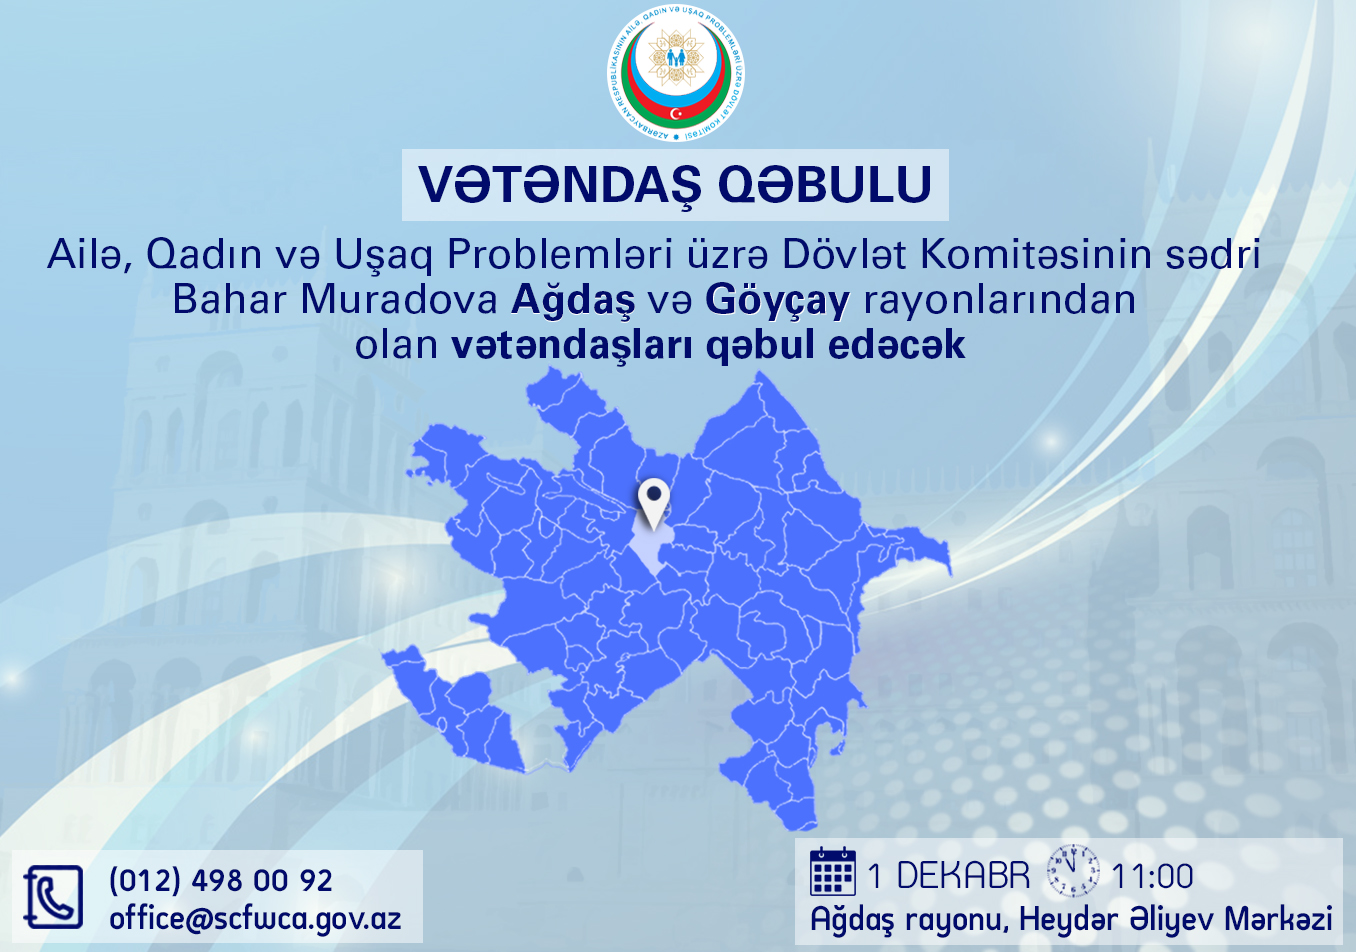 Dövlət Komitəsinin sədri Bahar Muradova Ağdaşda vətəndaşları qəbul edəcək